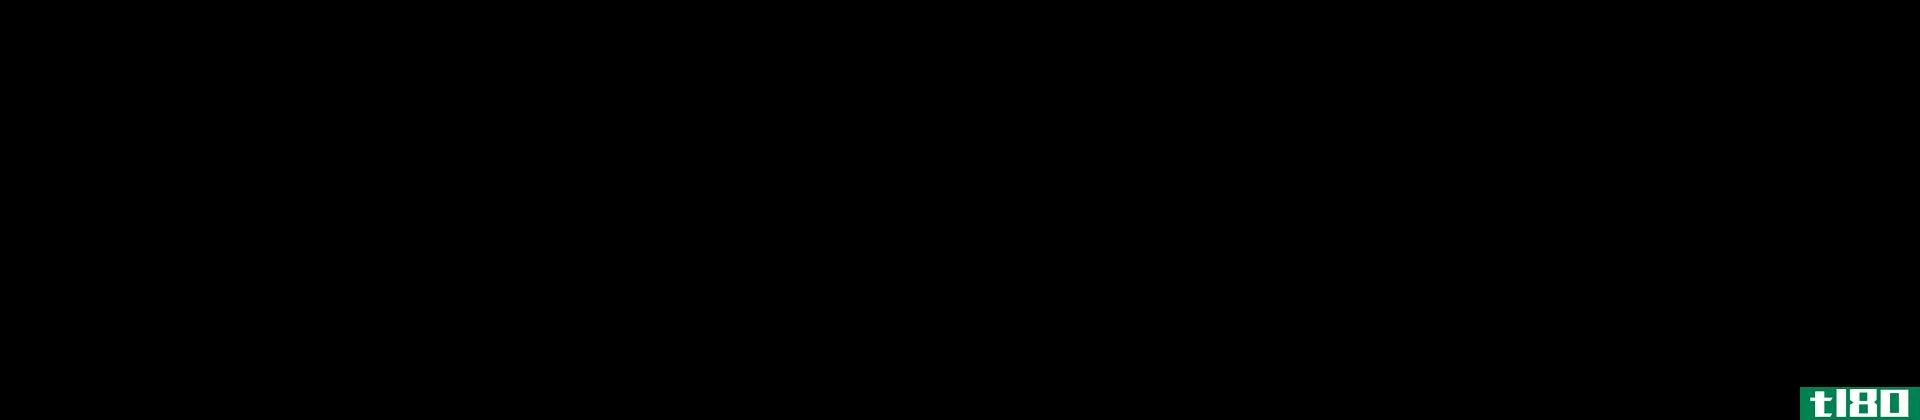 二丙二醇(dipropylene glycol)和丙二醇(propylene glycol)的区别